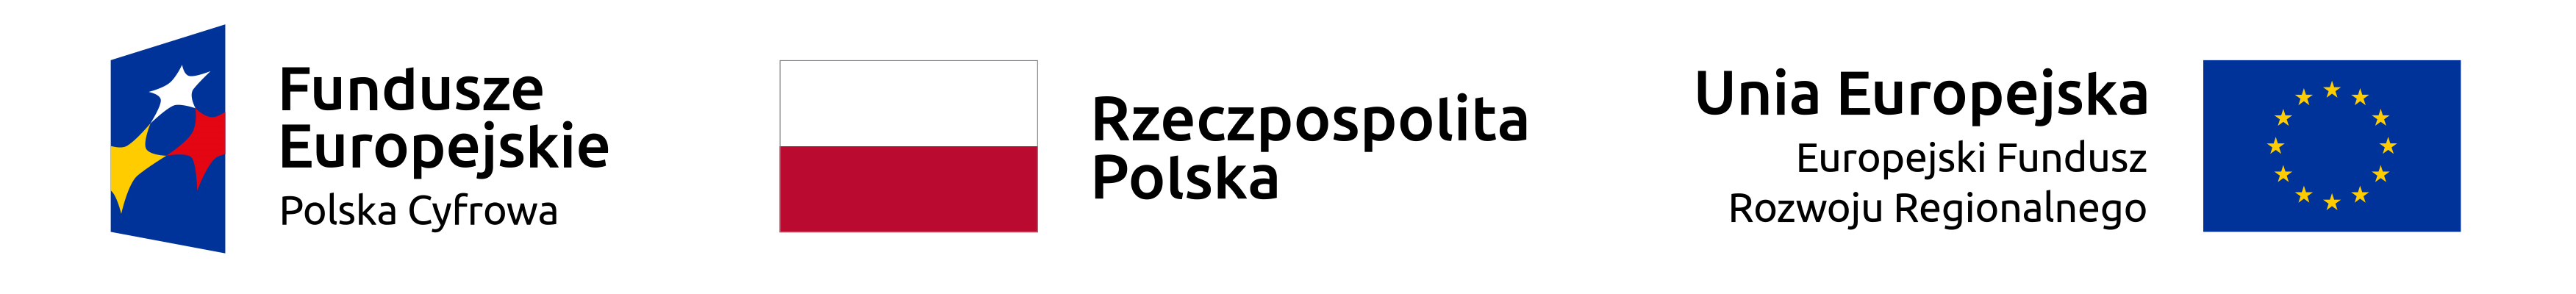 graficzna belka z logotypami ue polska cyfrowa i flaga Polski